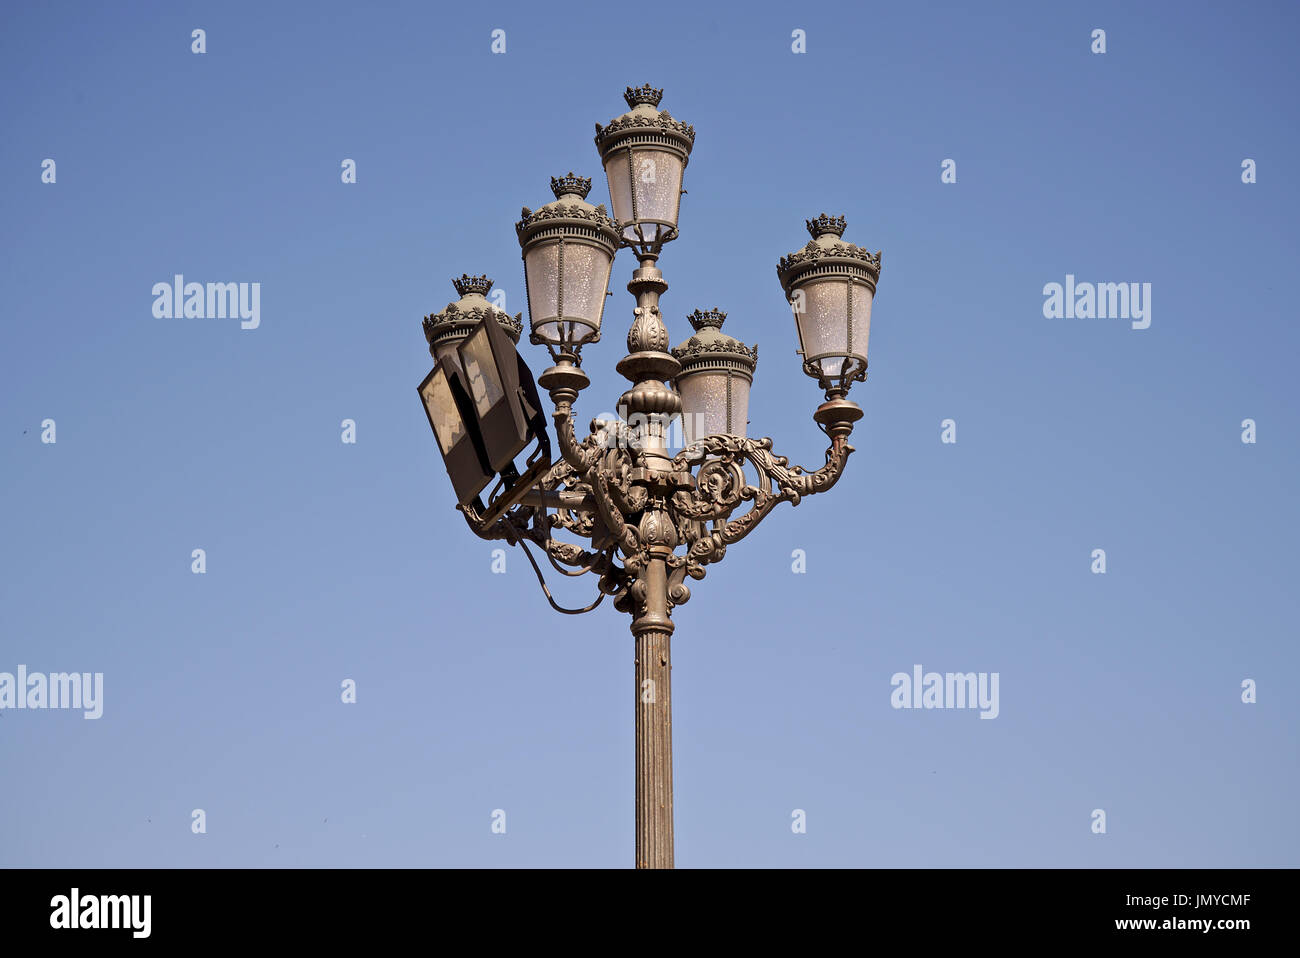 Vintage citylight di Madrid, Spagna. Immagine presa accanto a al Palazzo Reale di Madrid, Spagna, con dritto uncloudy cielo blu come sfondo. Foto Stock